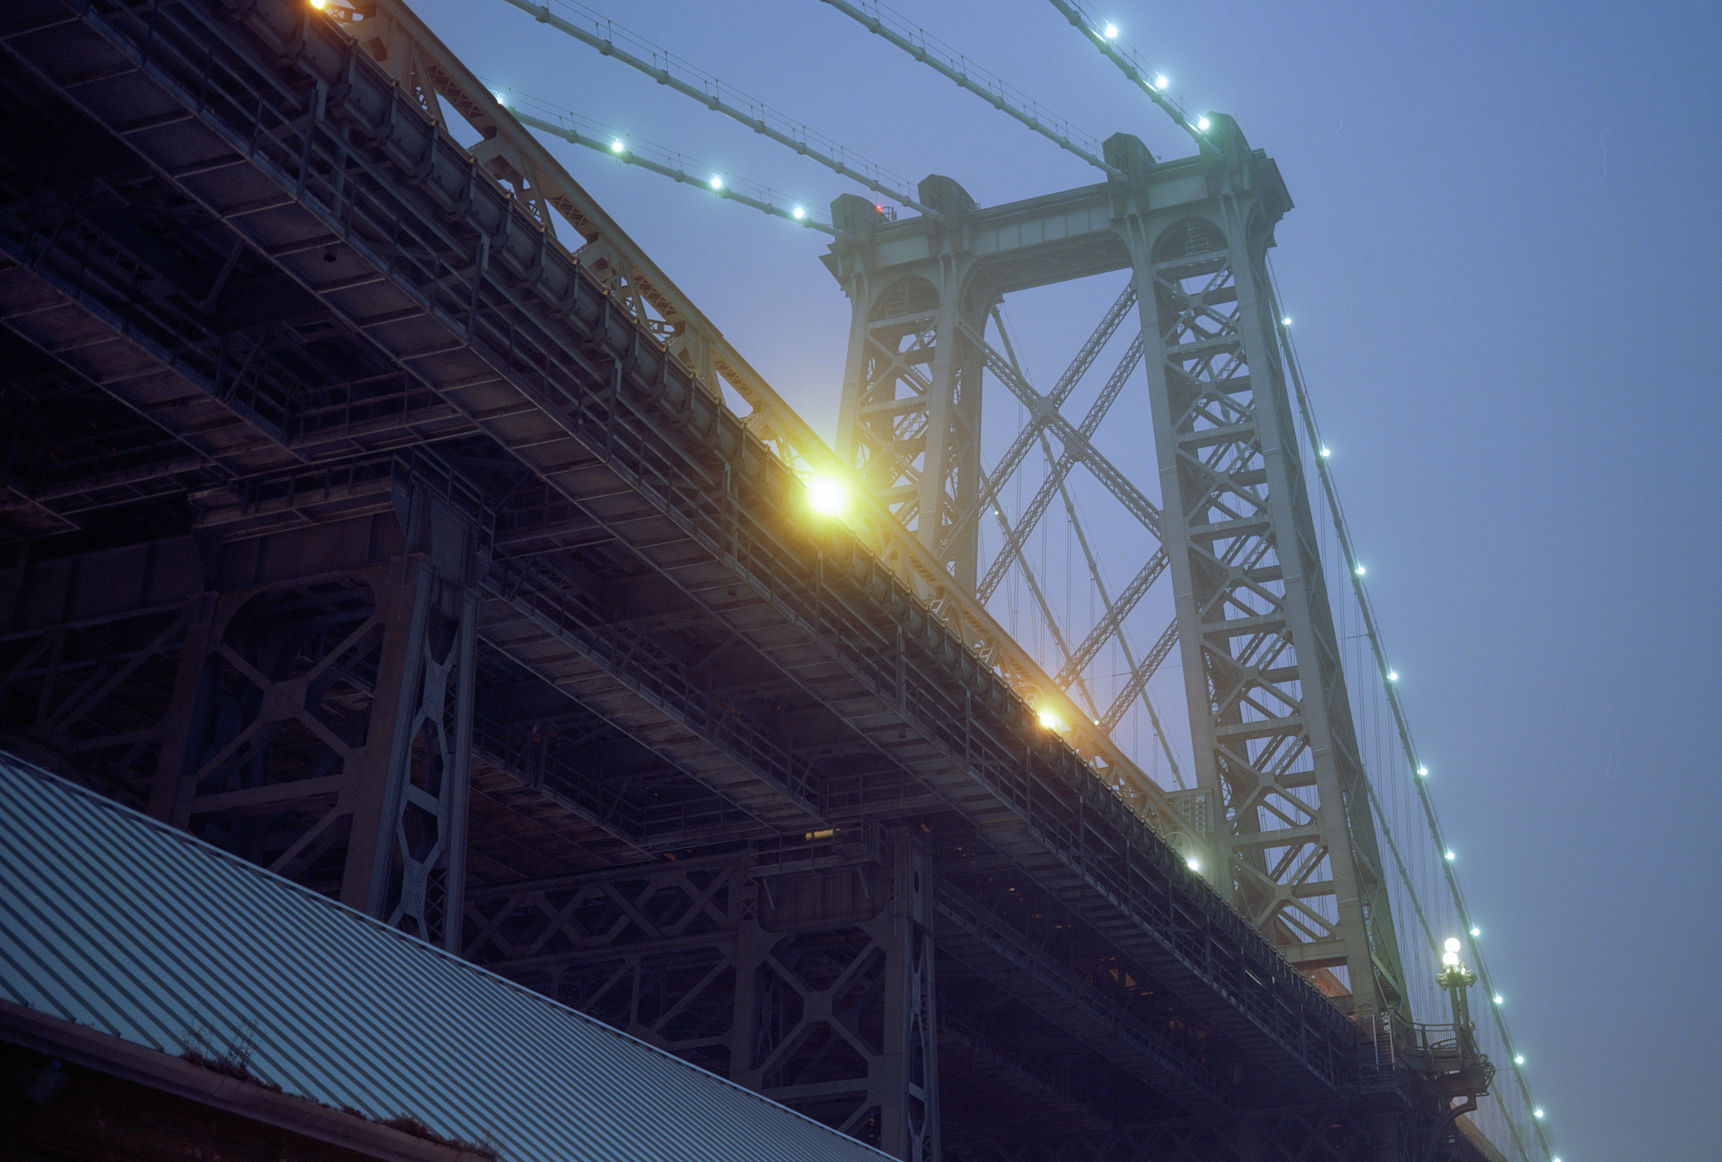 Lights On The Bridge